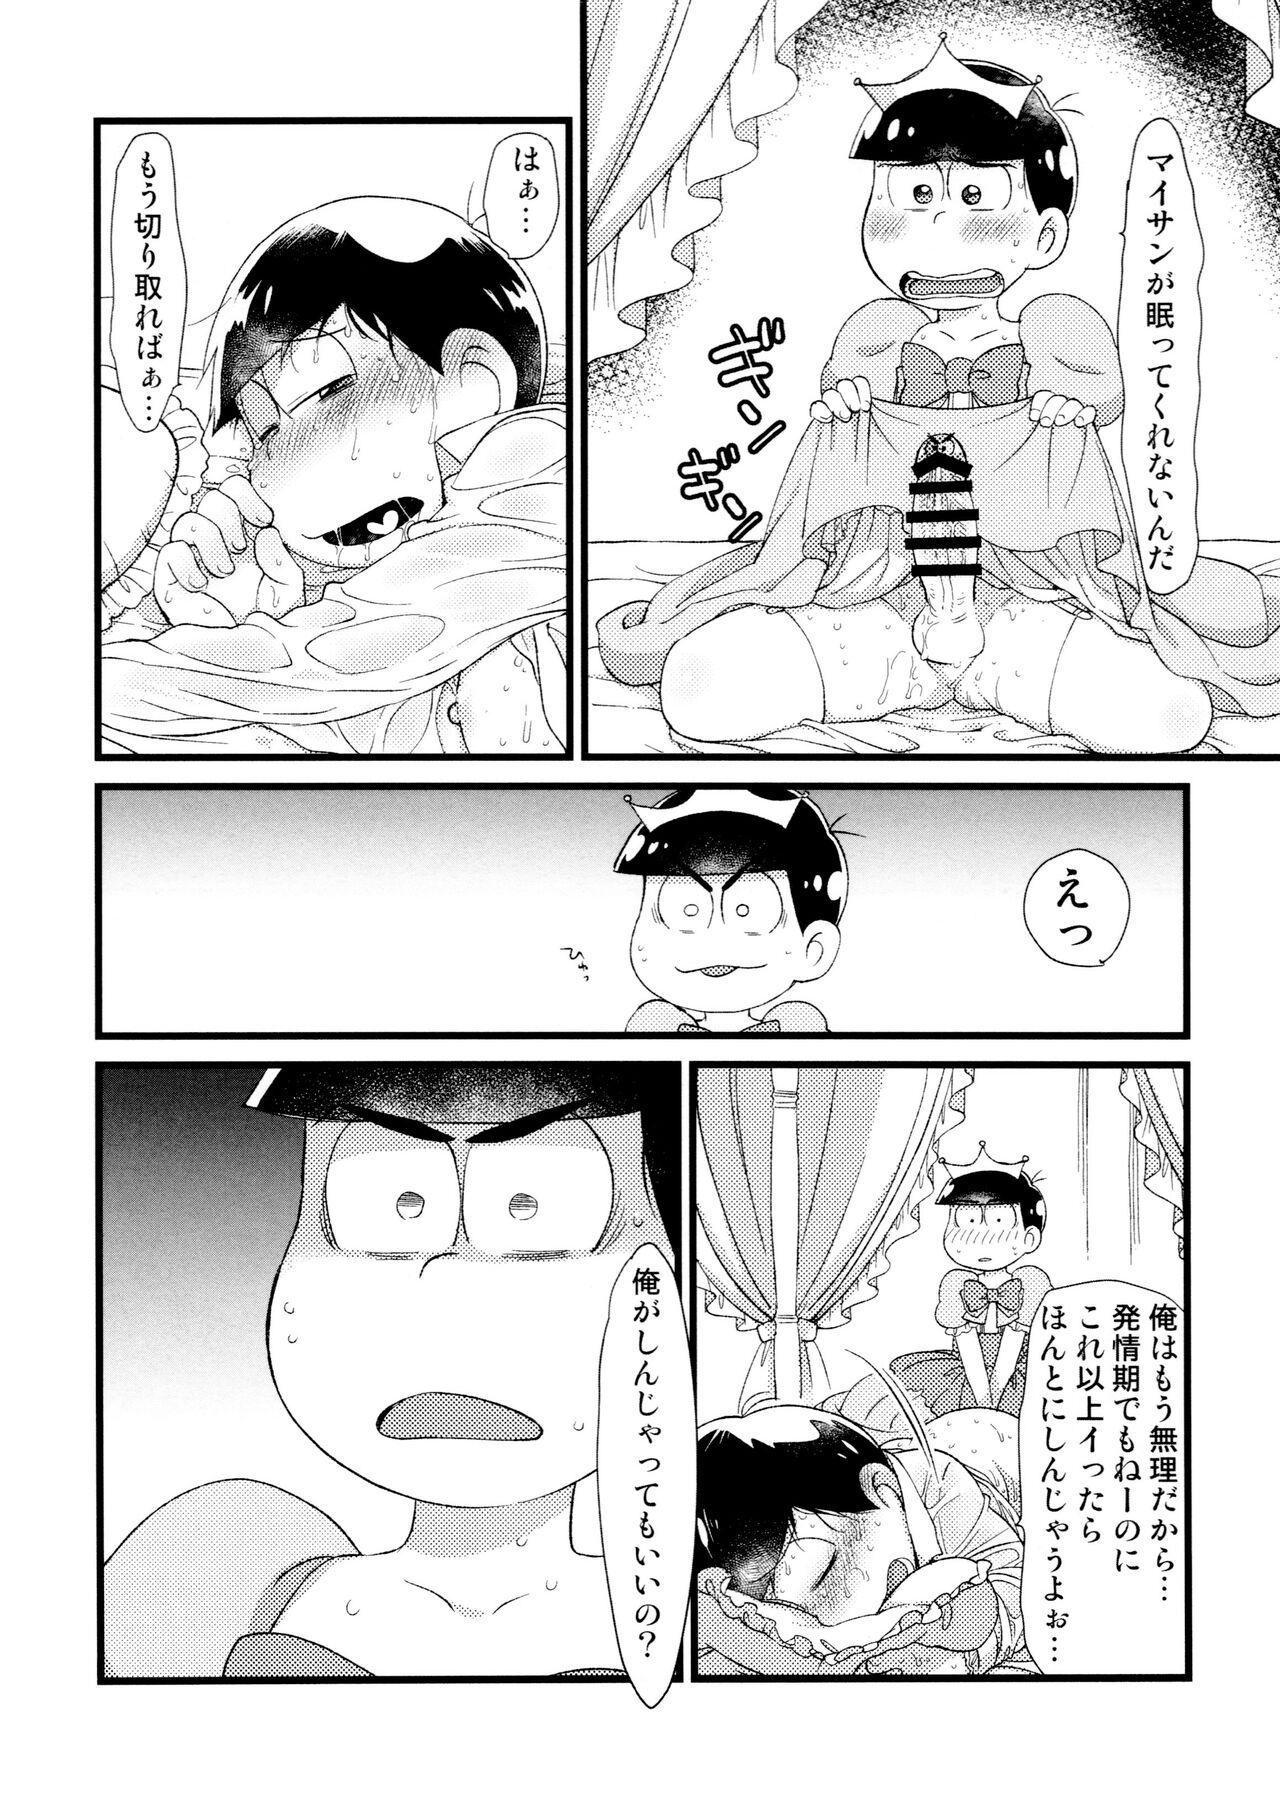 3some Anata to zutto asa kara asamade - Osomatsu san Dominate - Page 9